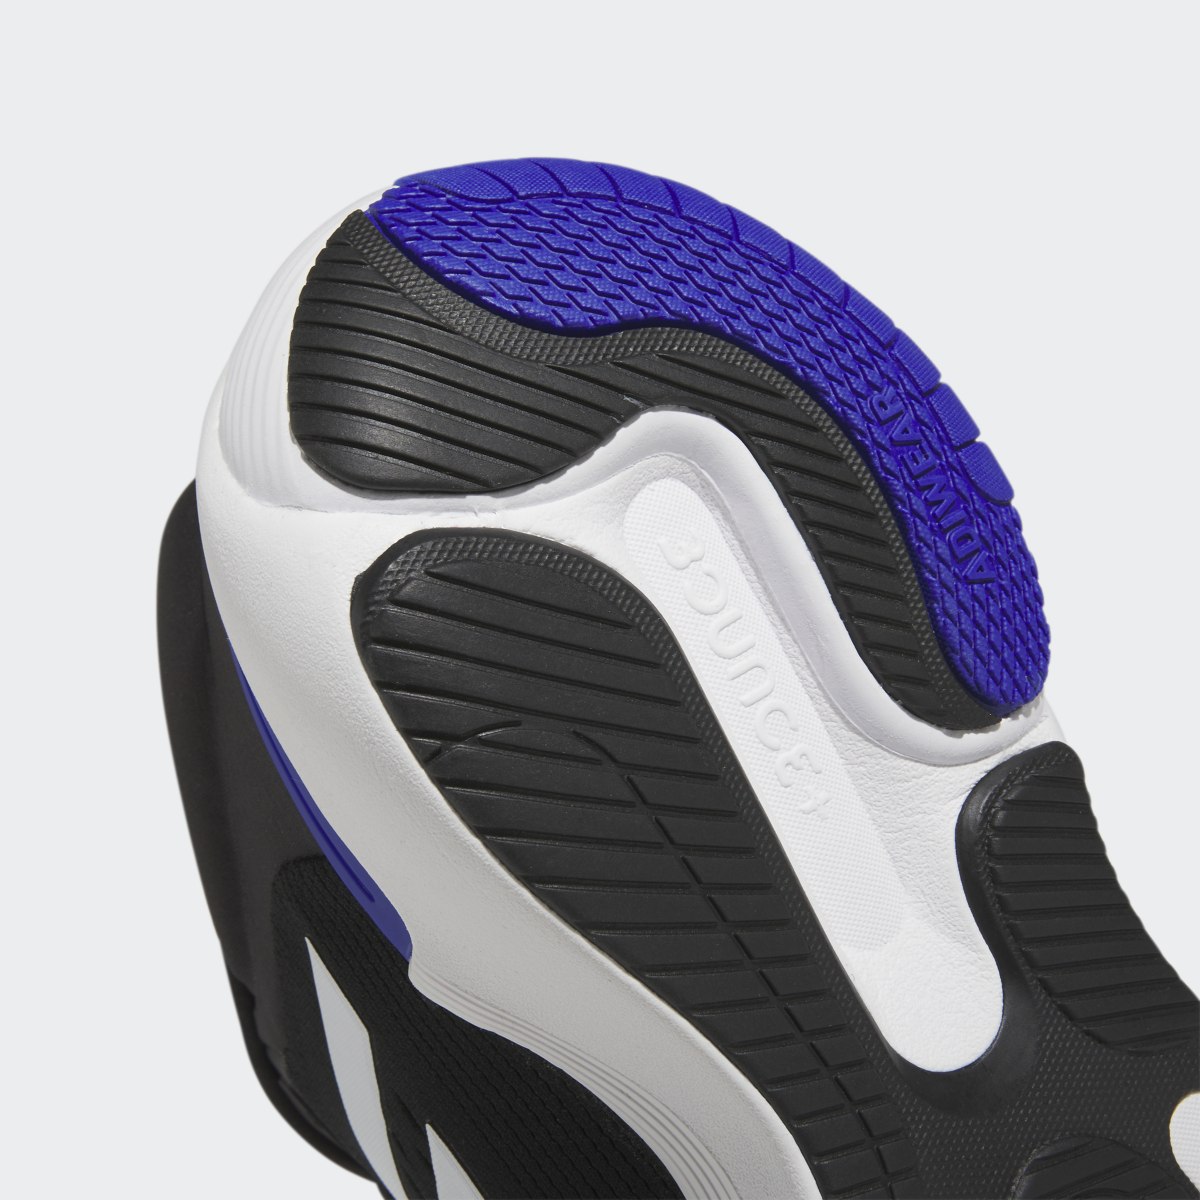 Adidas Response Super 2.0 Ayakkabı. 10